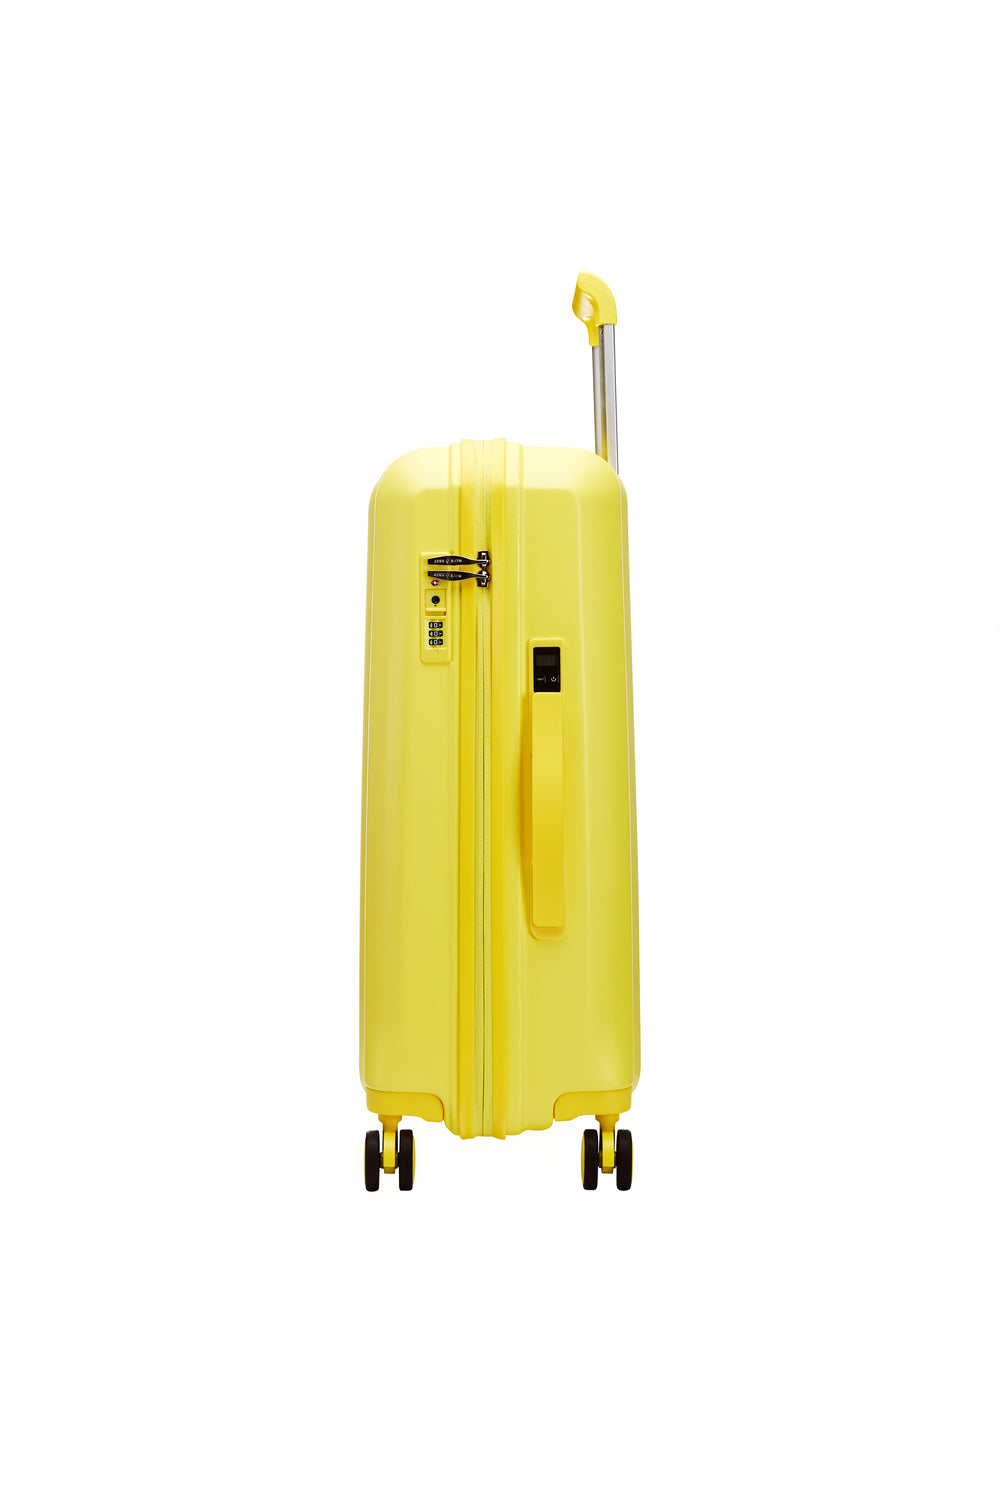 Smart suitcase Large size Sunny Lemon HAVE A REST